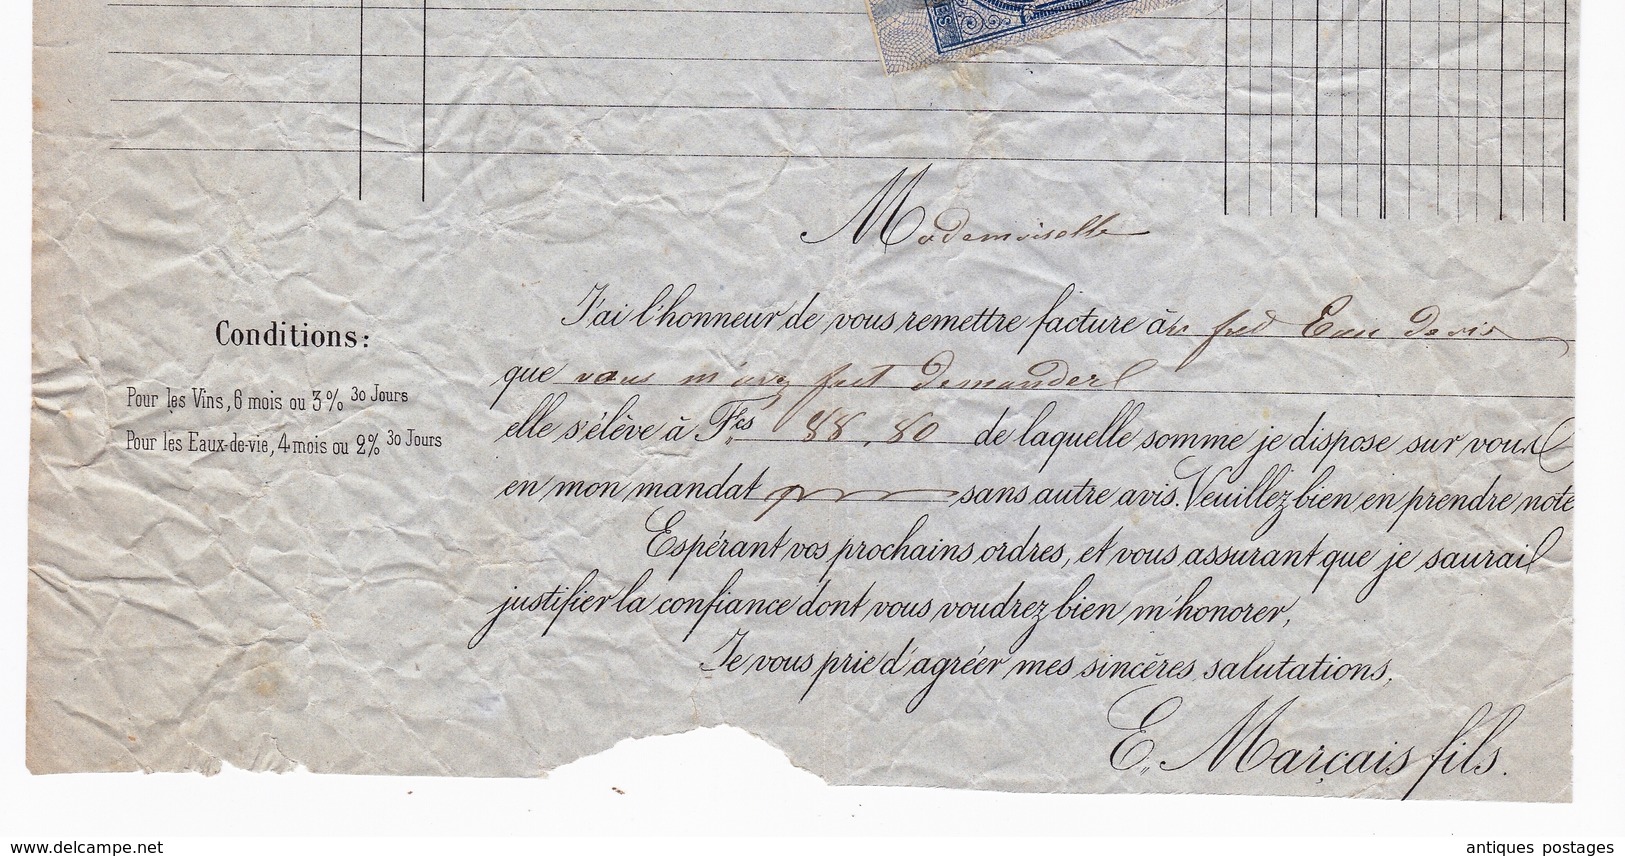 Lettre 1875 Laval Mayenne Marçais Fils Vins En Gros Bazougers Quittances Reçus Et Décharges 10 Centimes Eau De Vie - Lettres & Documents